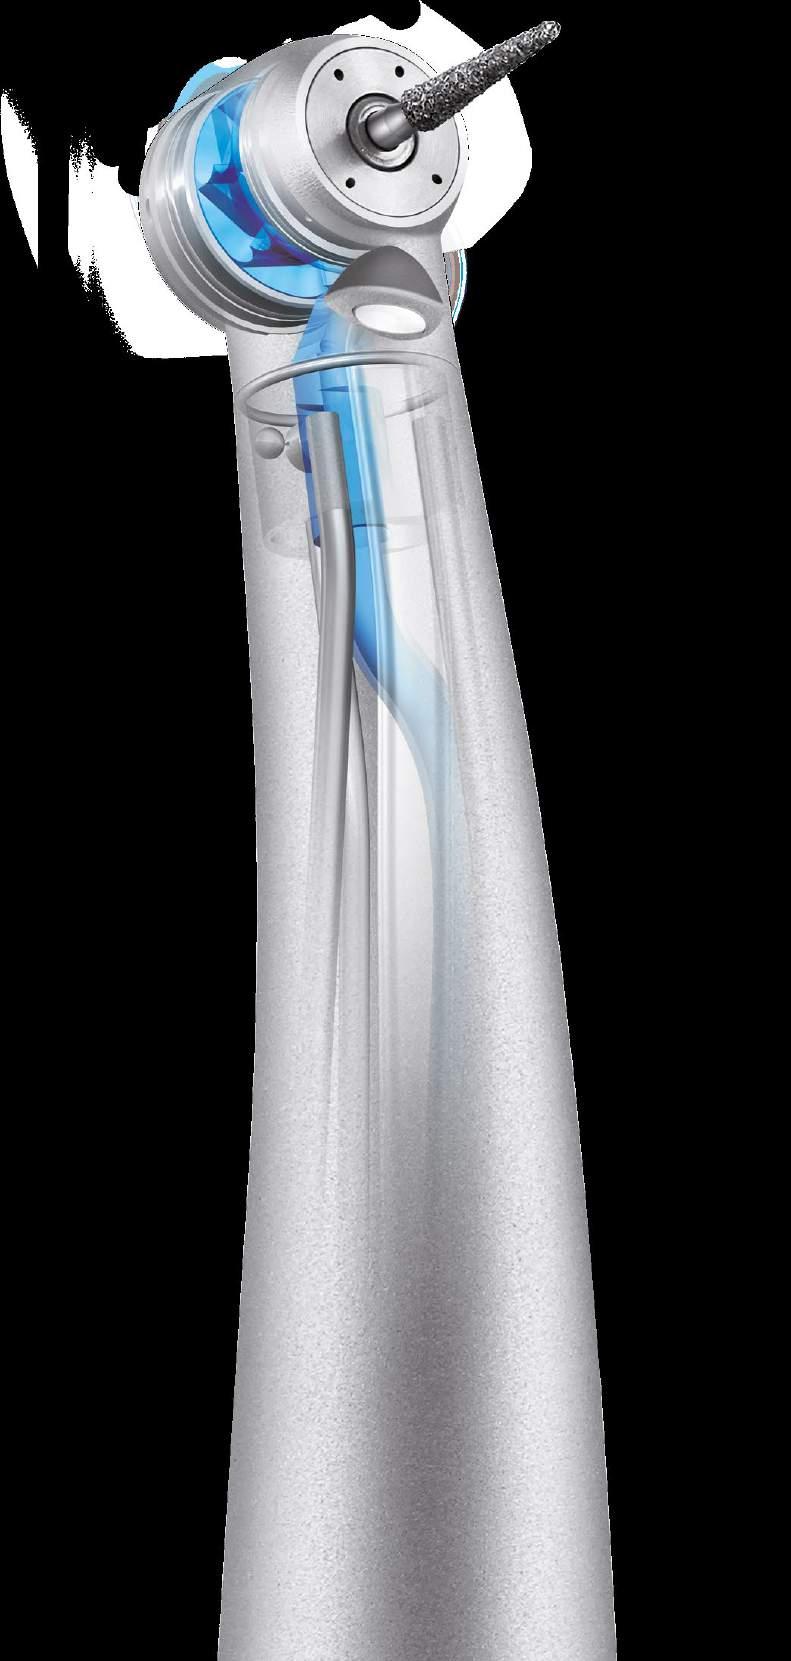 UNIFIX REF 1600933-001 O 2 x TORNADO S LK PARA ENLACE MULTIFLEX DE KAVO REF 1600932-001 Una mejor visibilidad Gracias a las reducidas dimensiones de su cabeza (altura y diámetro), la turbina TORNADO